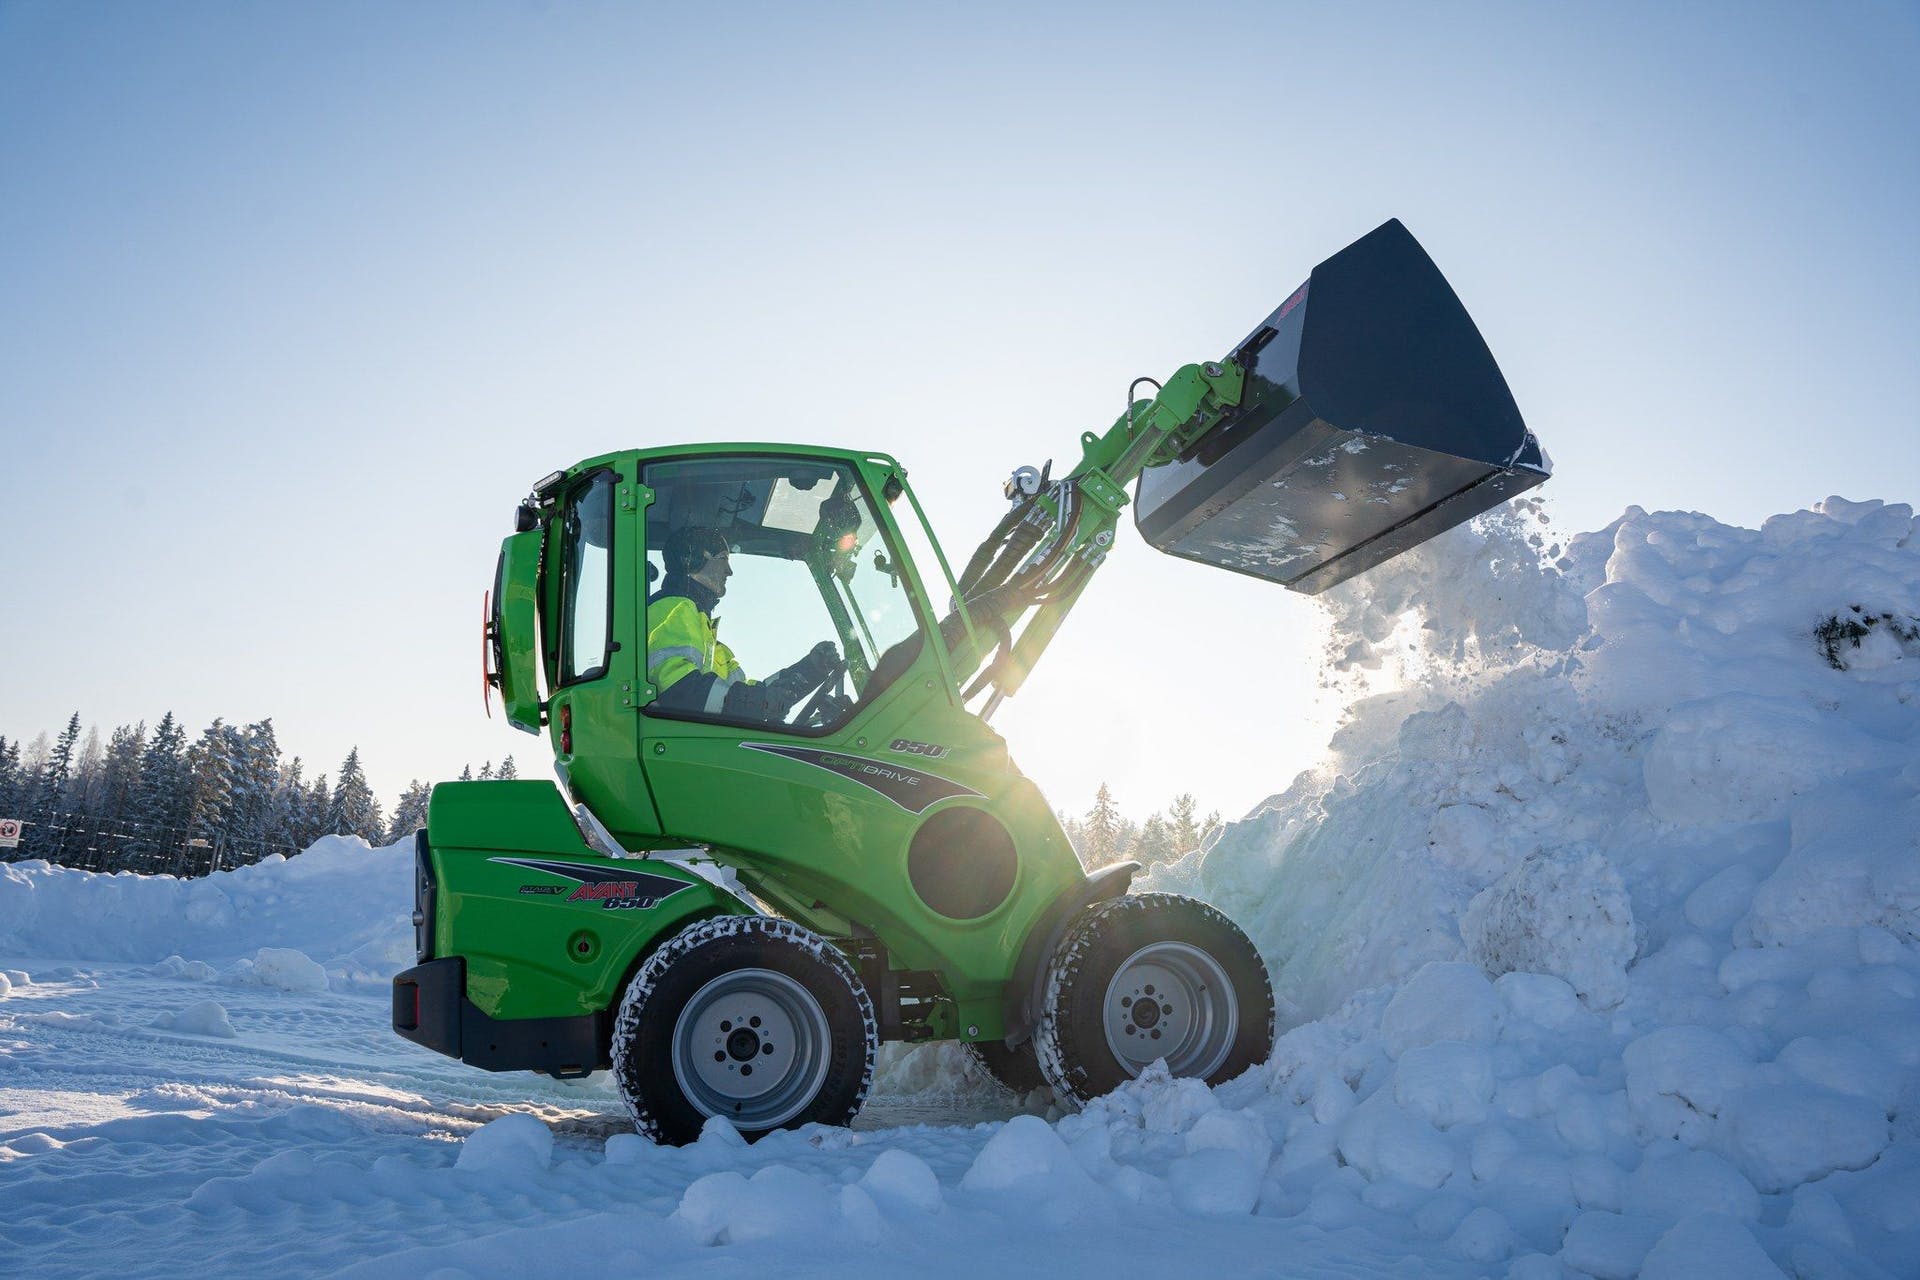 Avant Tecno new 650i compact wheel loader shoveling snow